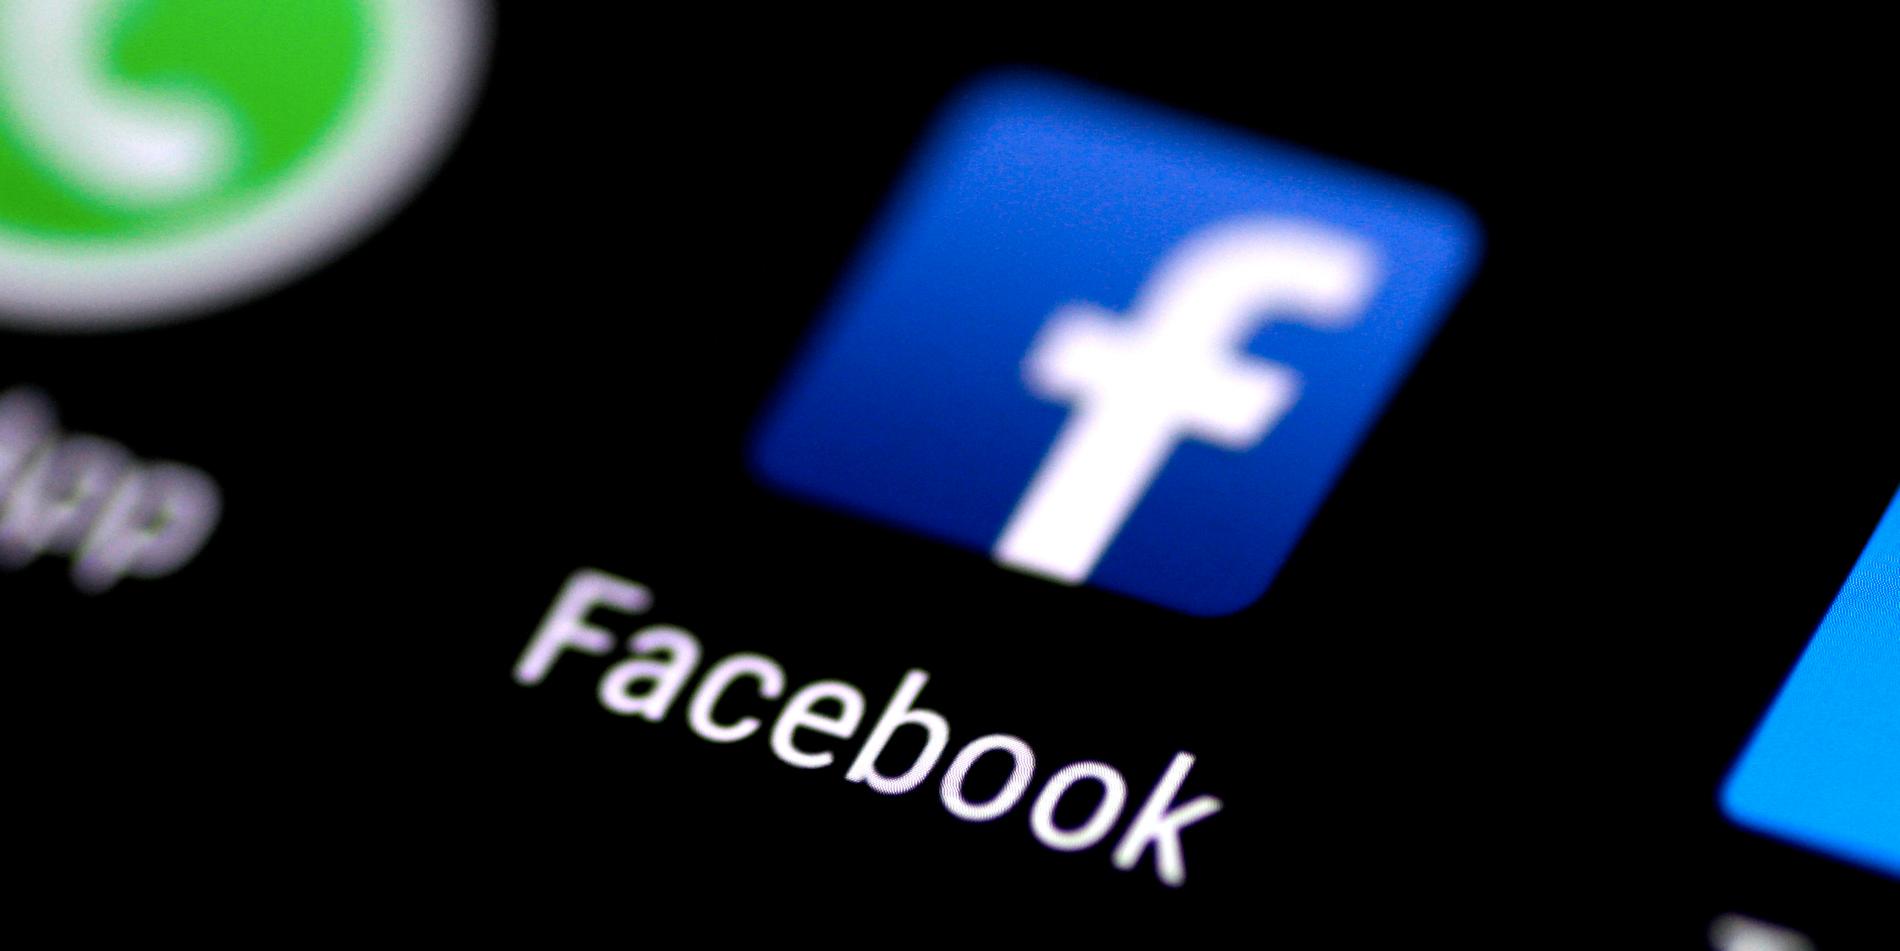 En kvinna från Flen hängde ut tonåring som sexbrottsling på Facebook – nu döms hon för förtal, uppger svt. 